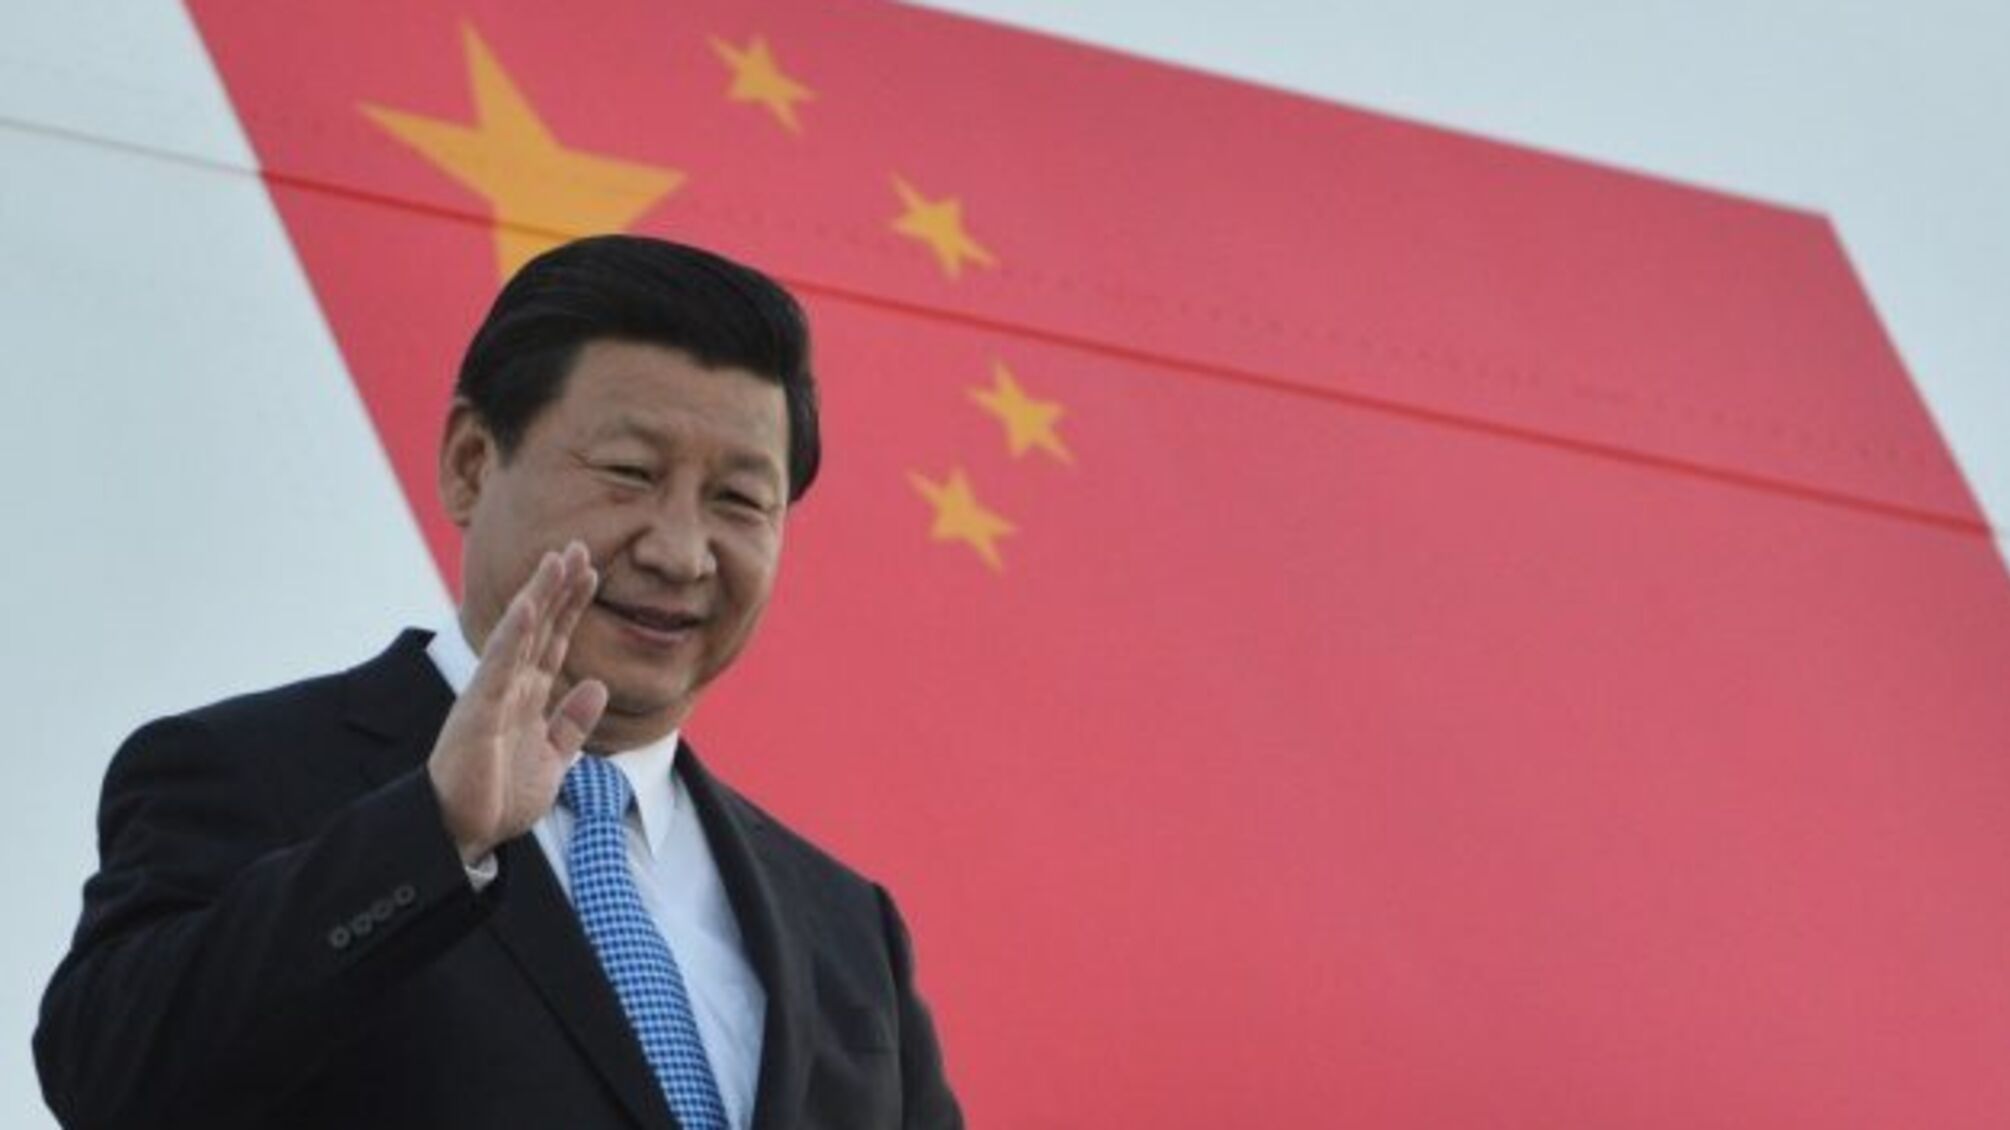 Китай готовий докладати зусиль для успішного розвитку співпраці з Україною - Сі Цзіньпін